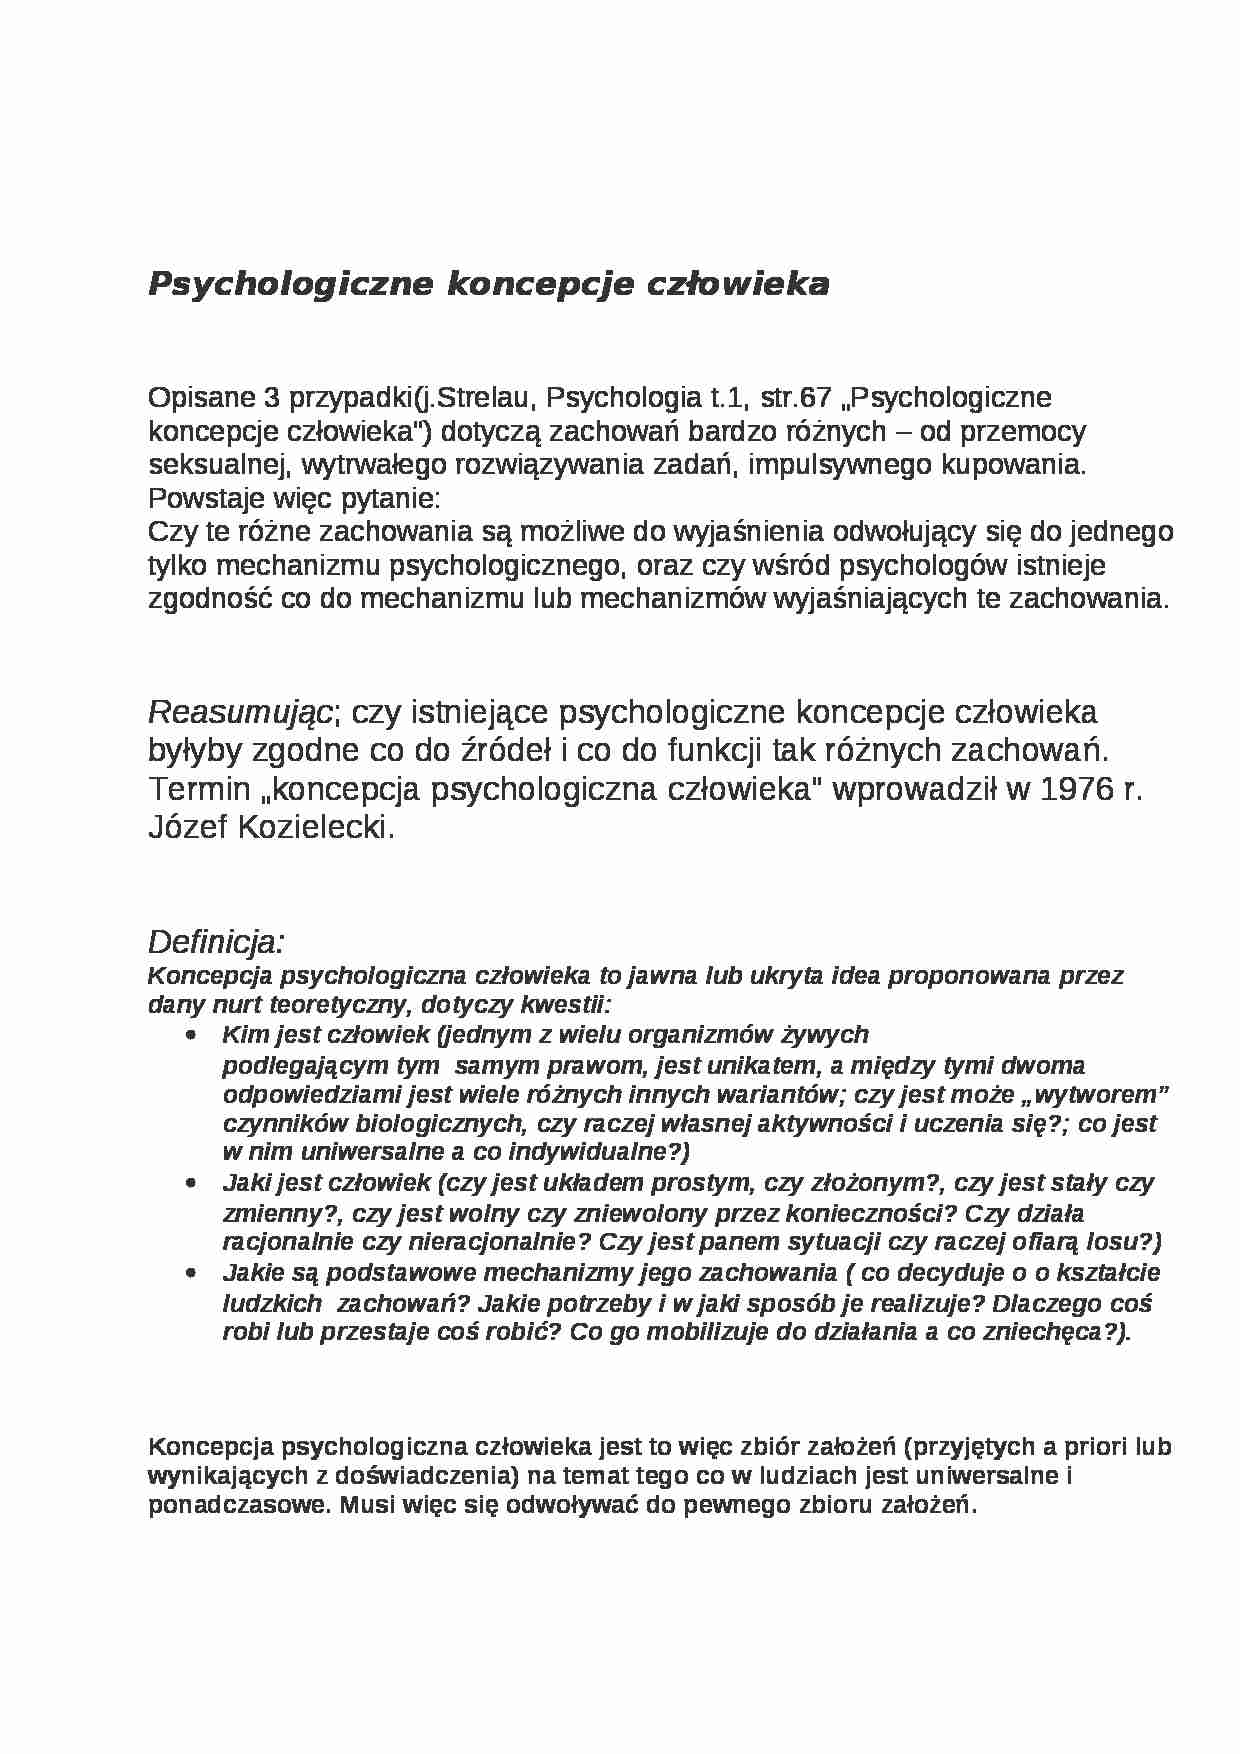 Psychologiczne koncepcje człowieka - strona 1